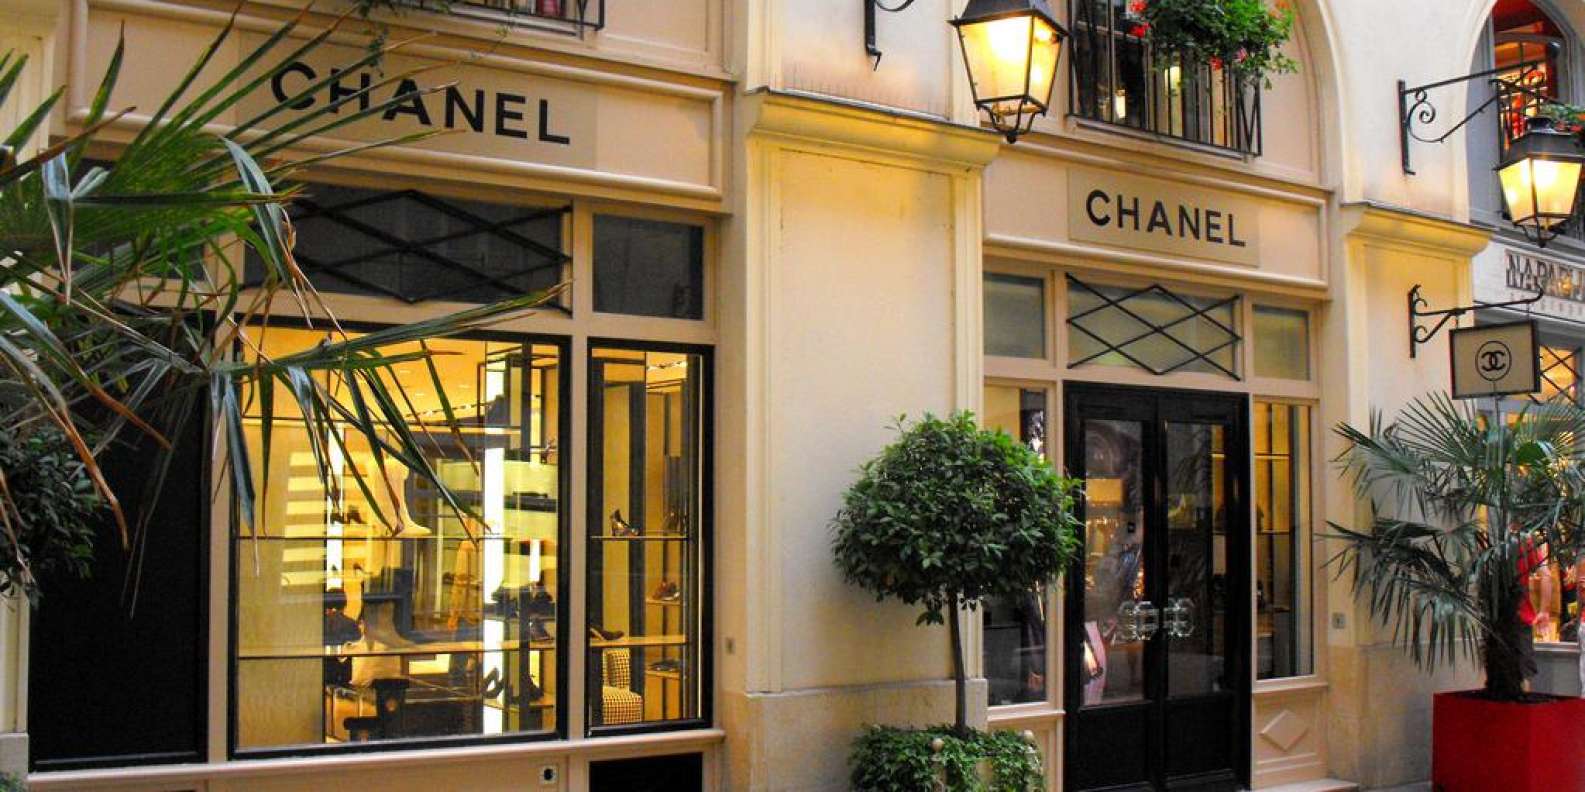 Chanel Storefront - Paris, Franceooh la la!!!